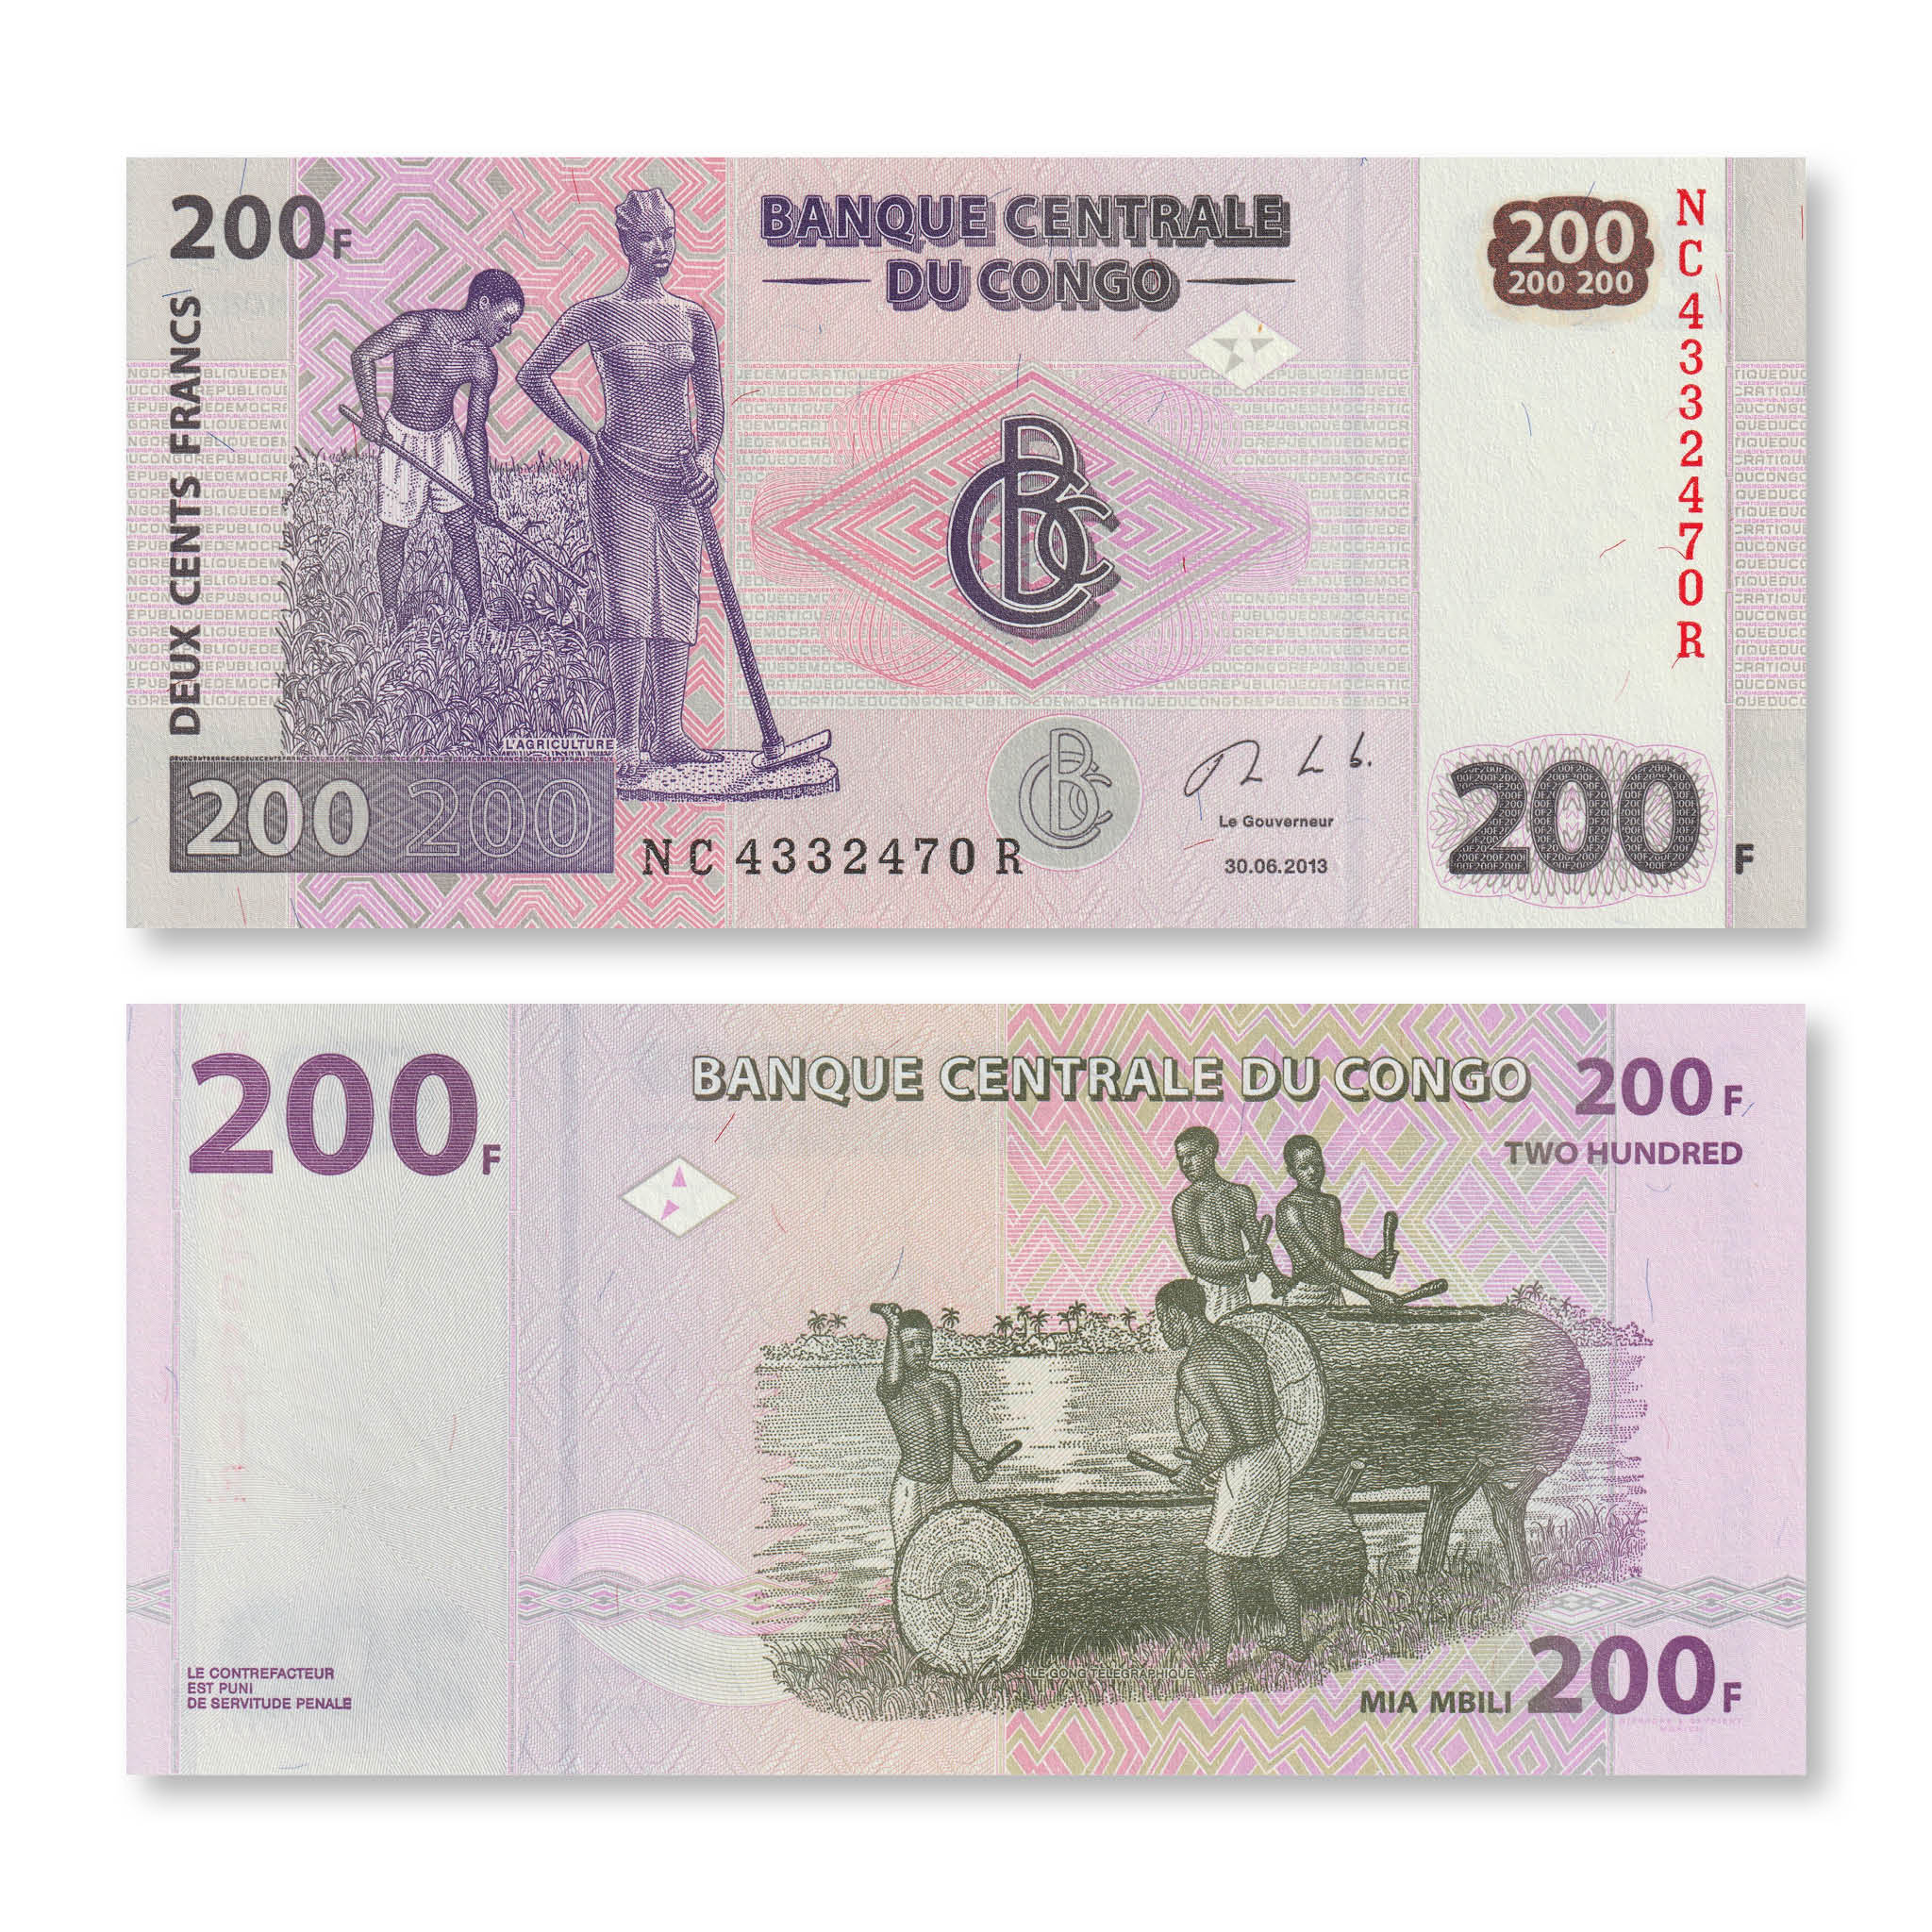 Congo Democratic Republic 200 Francs, 2013, B321c, P99b, UNC - Robert's World Money - World Banknotes